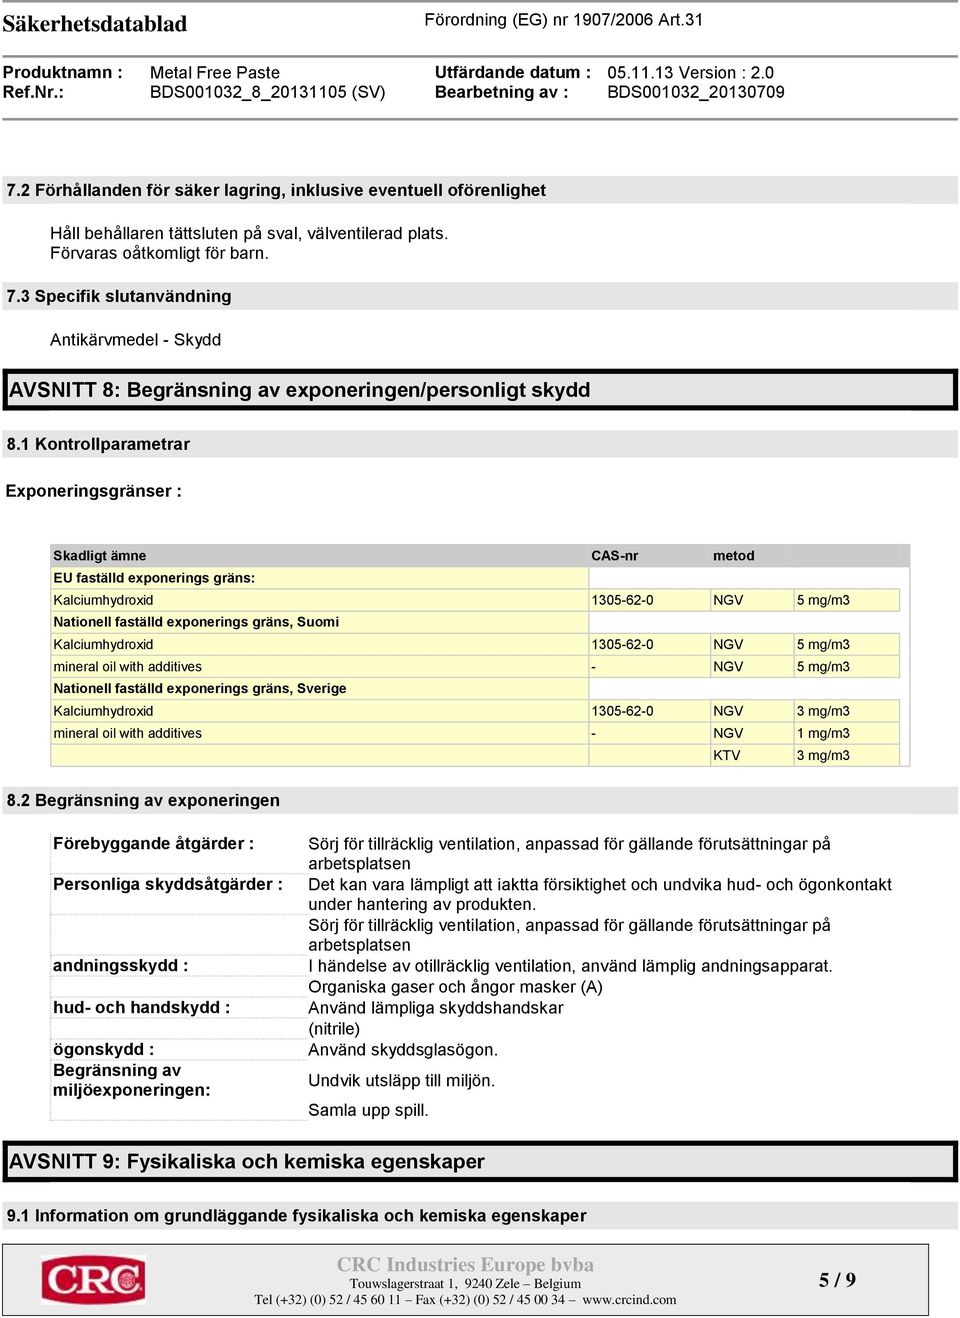 1 Kontrollparametrar Exponeringsgränser : Skadligt ämne CAS-nr metod EU faställd exponerings gräns: Kalciumhydroxid 1305-62-0 NGV 5 mg/m3 Nationell faställd exponerings gräns, Suomi Kalciumhydroxid